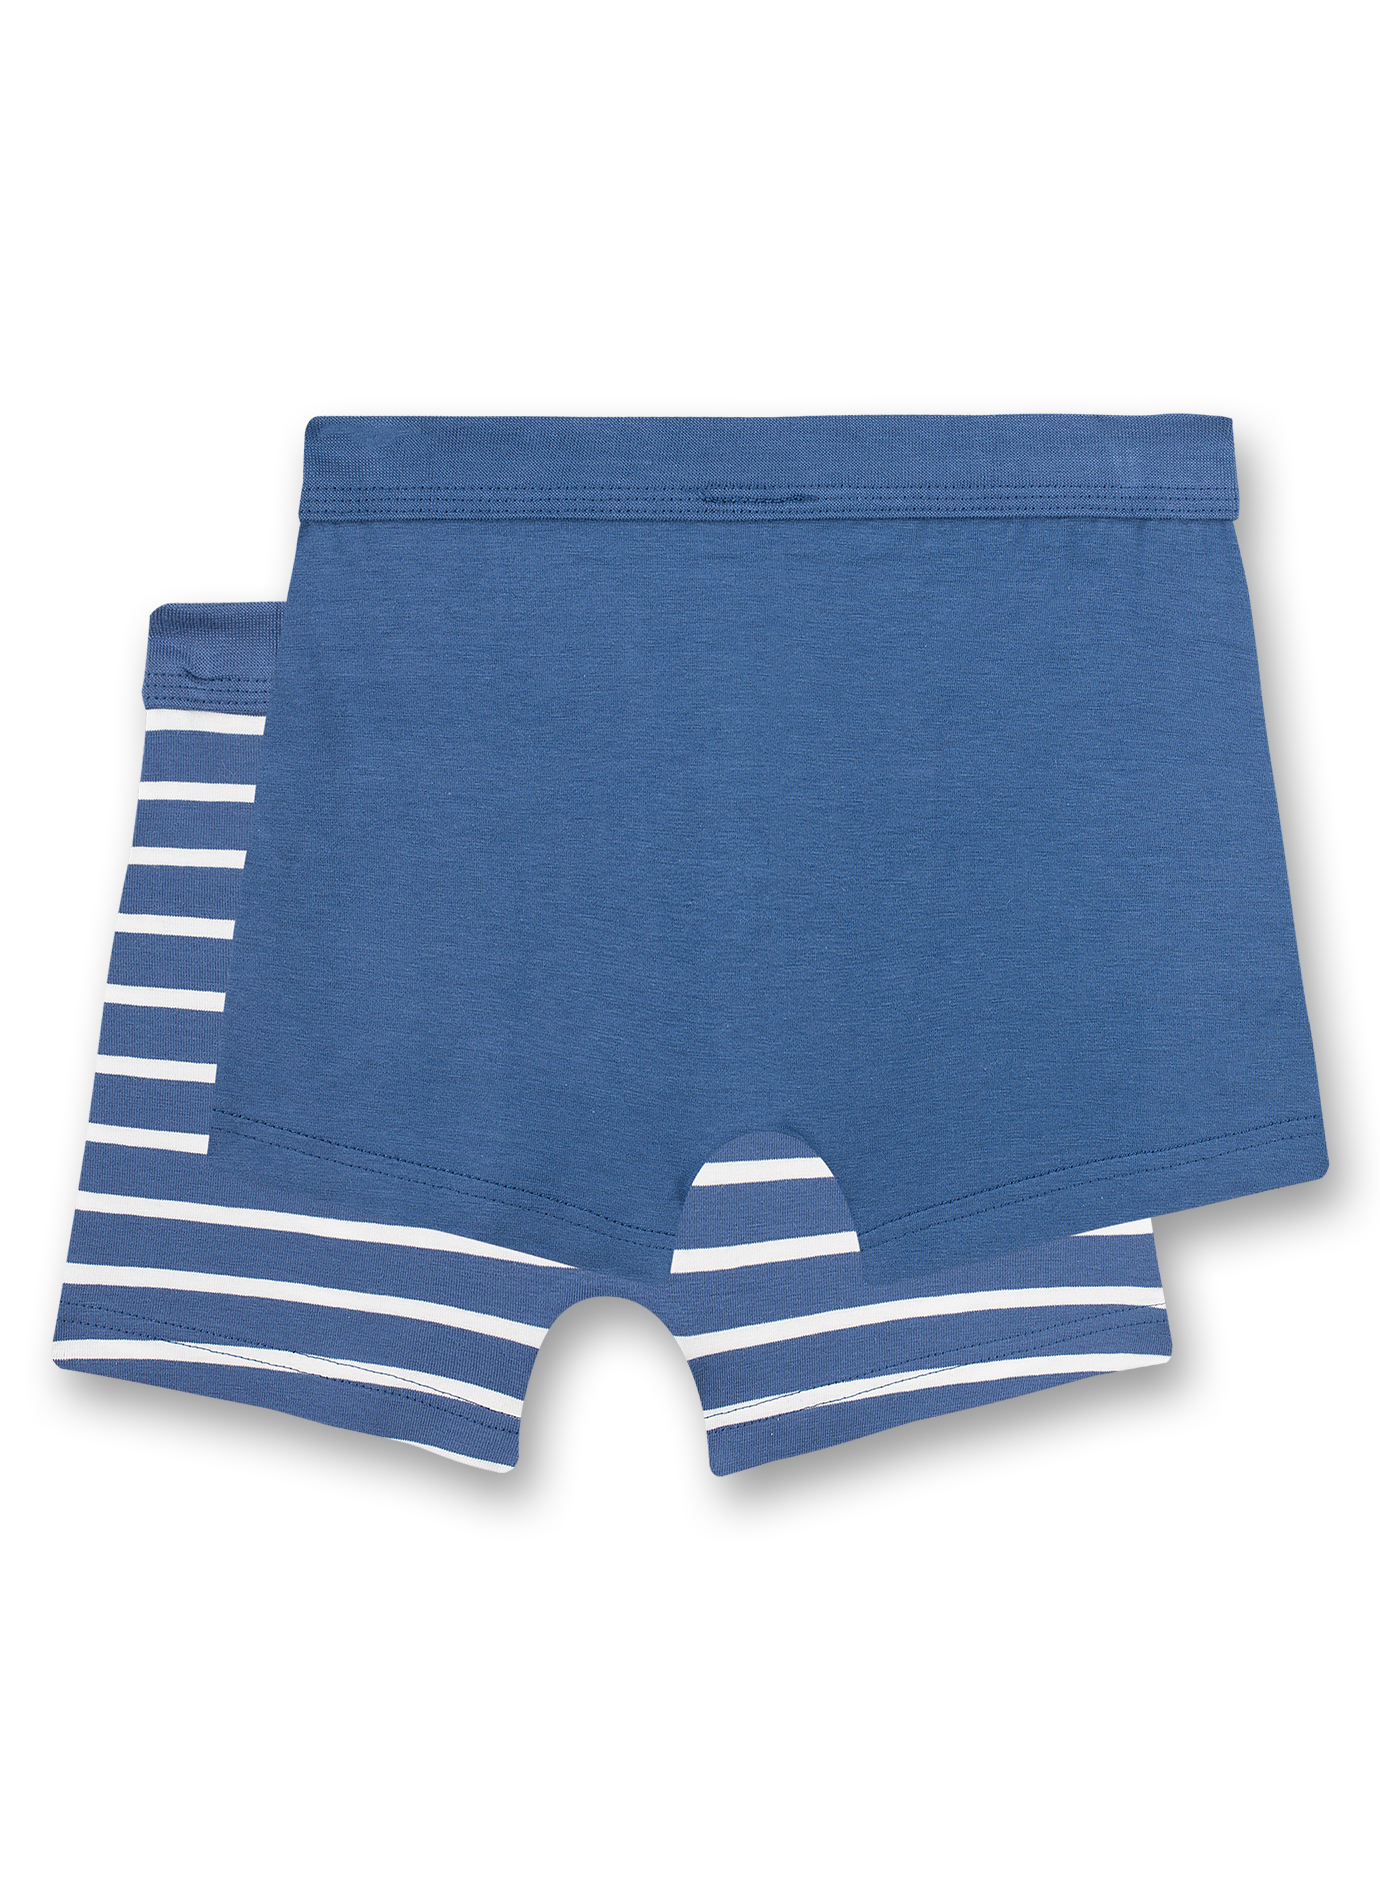 Jungen-Shorts (Doppelpack) Blau und Blau Ringel